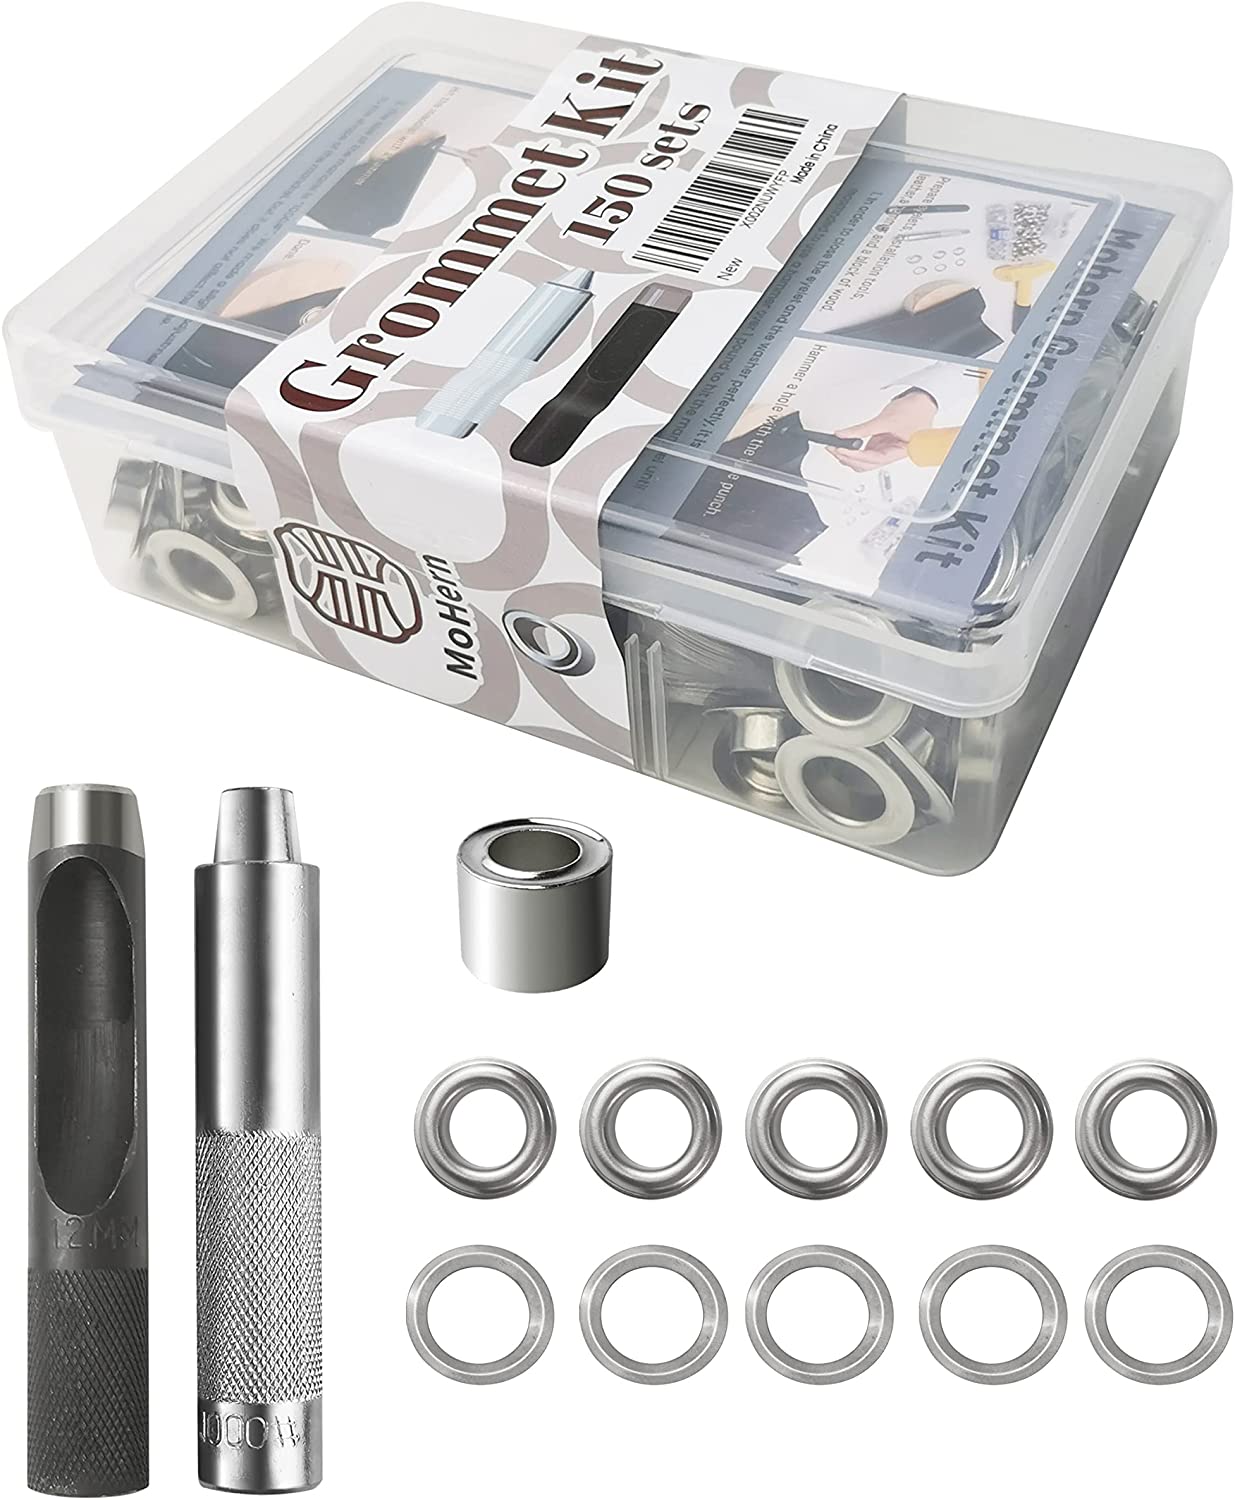 MoHern - Kit de herramientas de ojales de 1/2 pulgadas, 150 juegos de ojales y ojales y 3 piezas de 